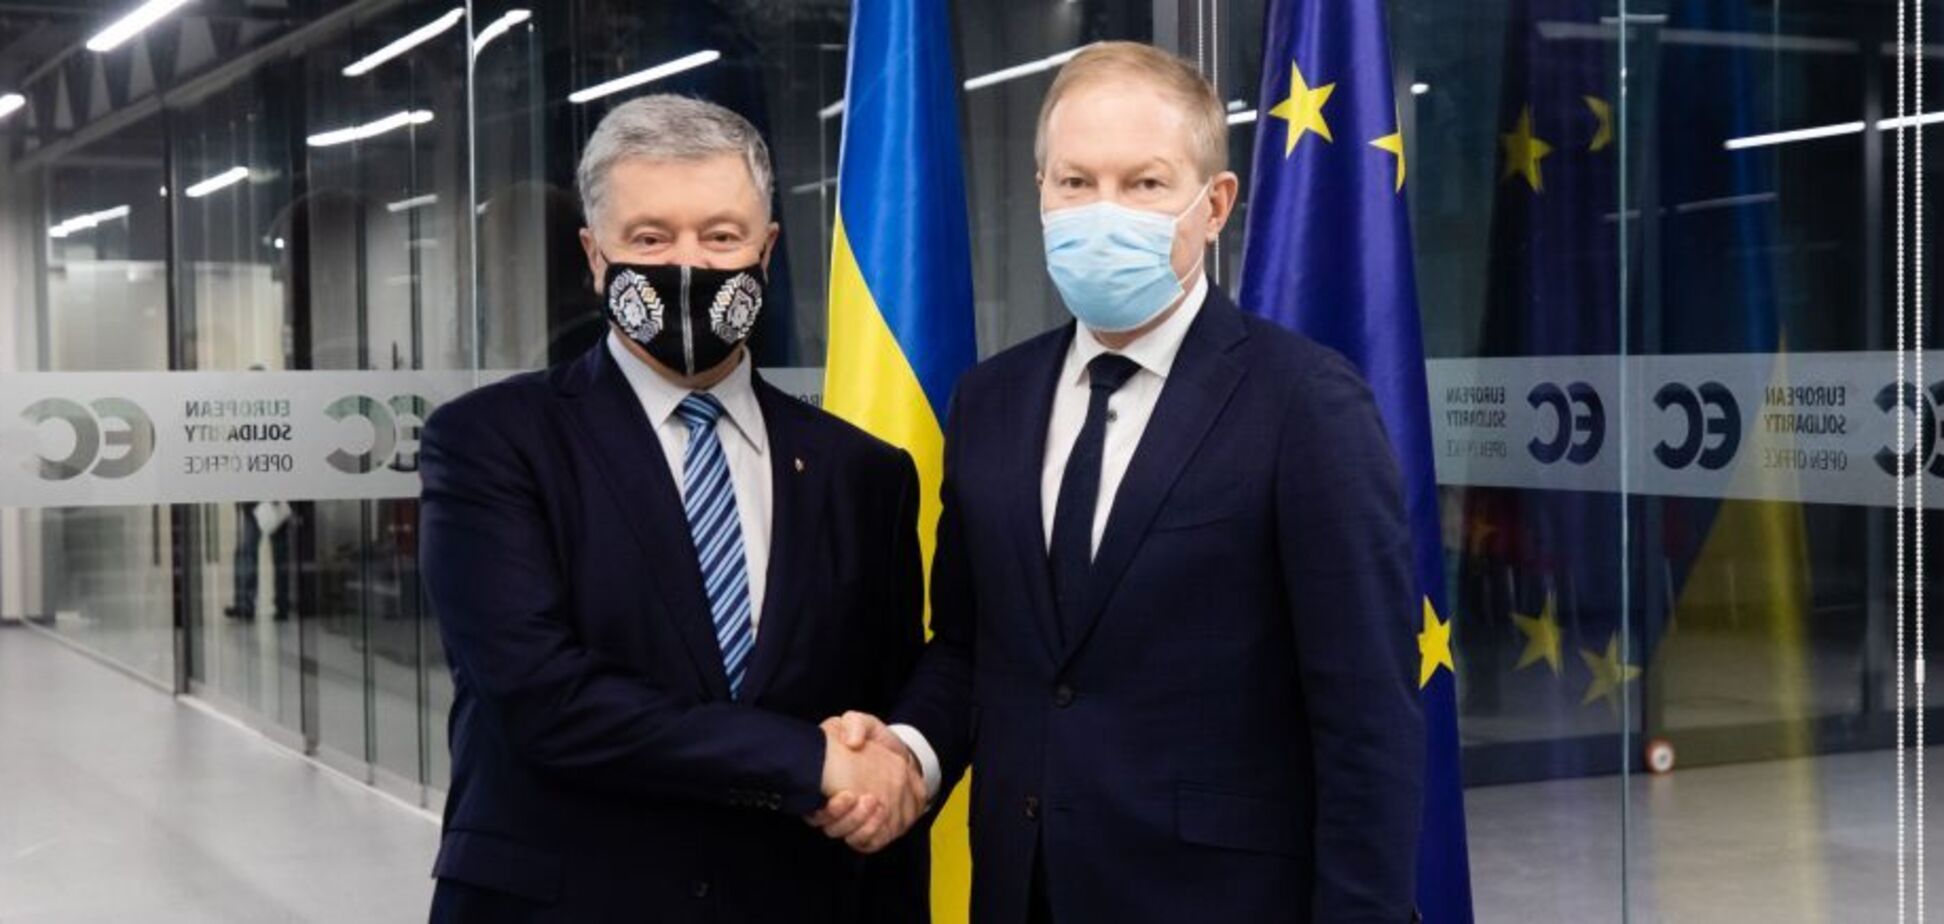 Порошенко обговорив з головою комітету у закордонних справах Парламенту Естонії безпекову ситуацію в Україні